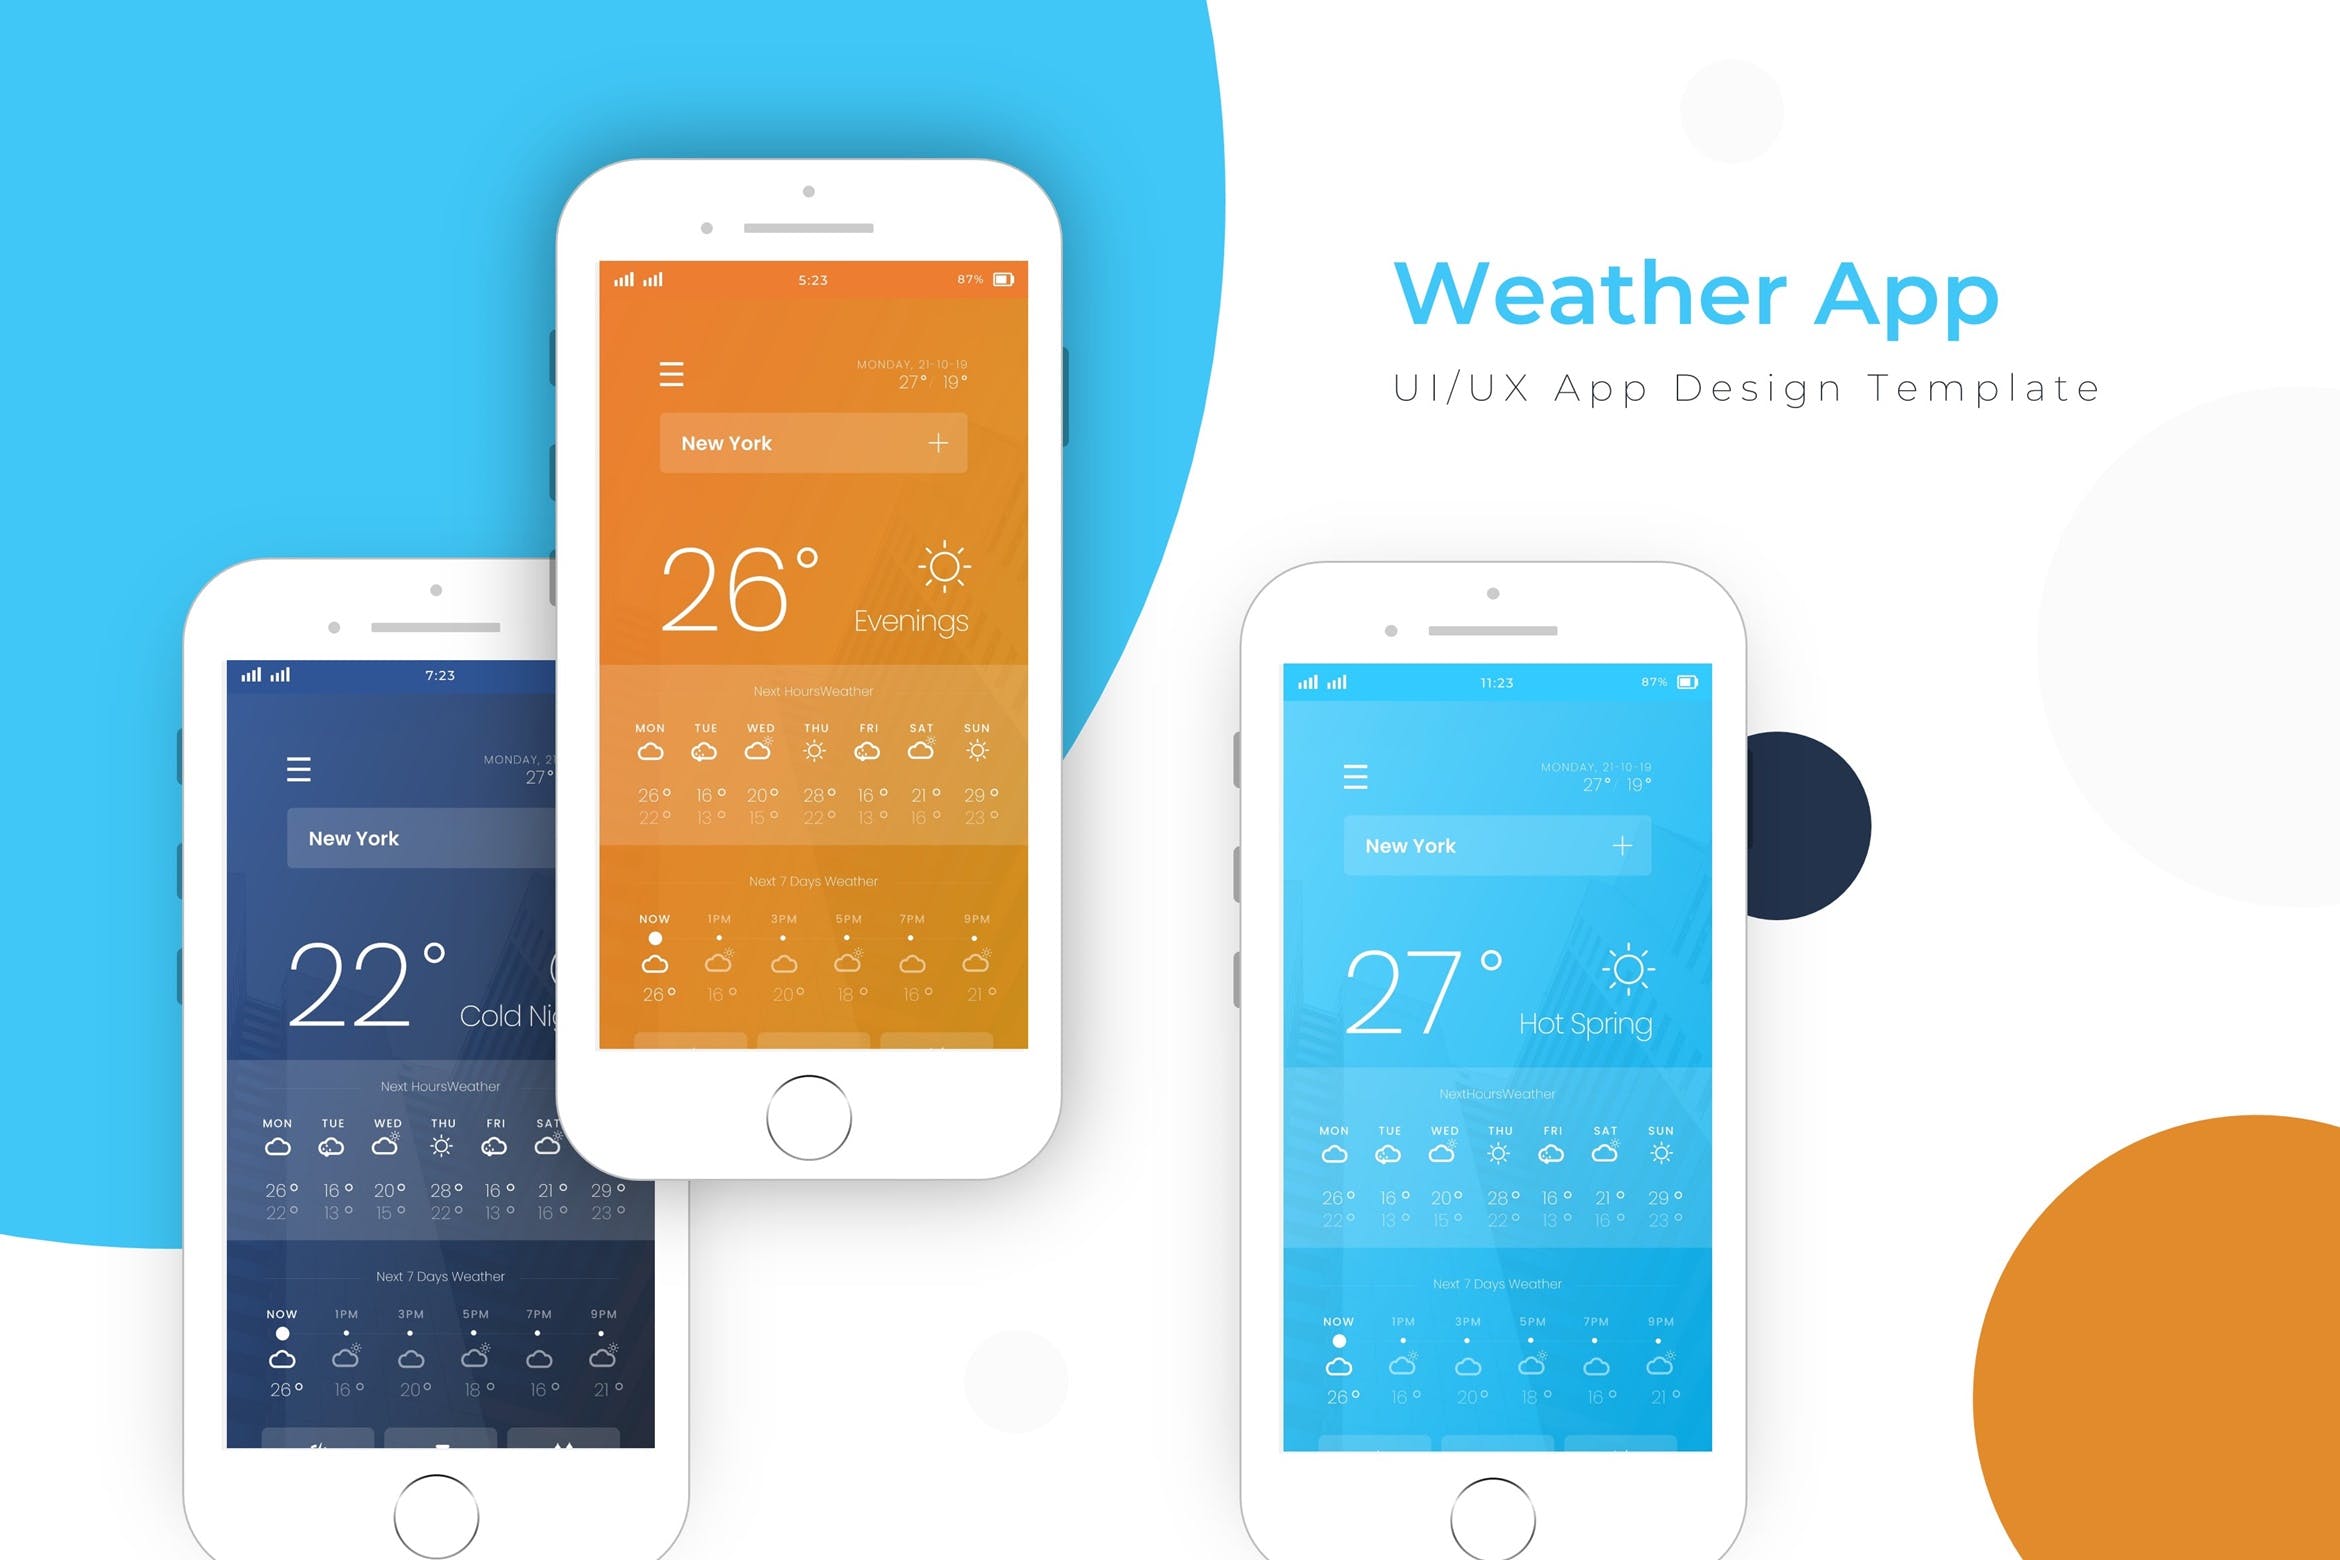 天气预报APP应用界面设计蚂蚁素材精选模板 Weather Template | App Design Template插图